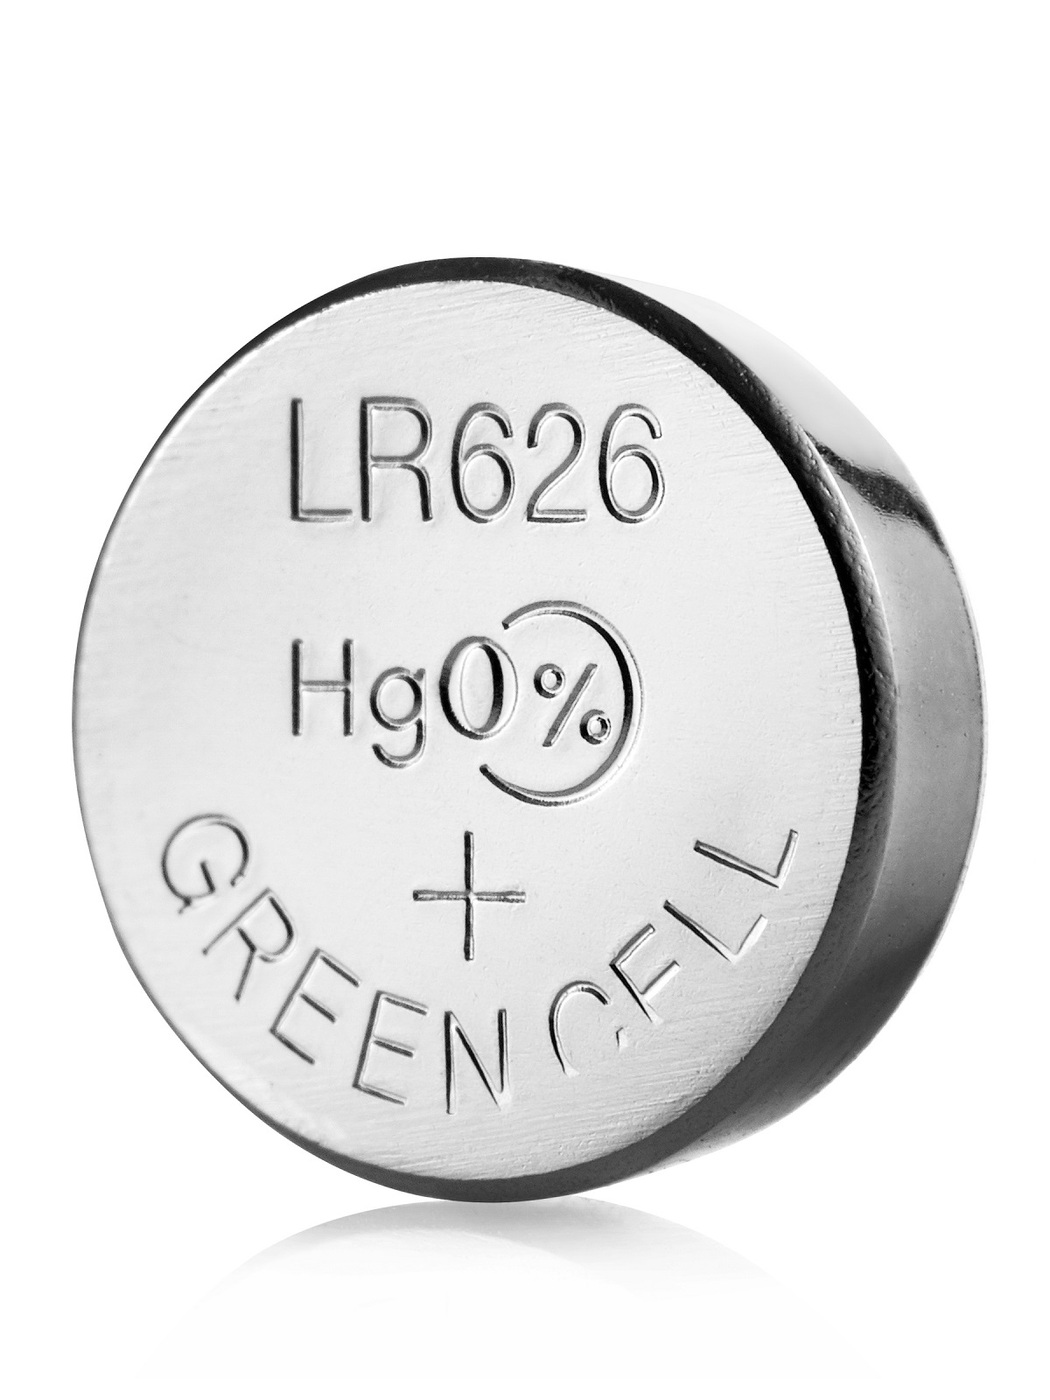 Модель батарейки LR626 как марганцево-щелочной элемент